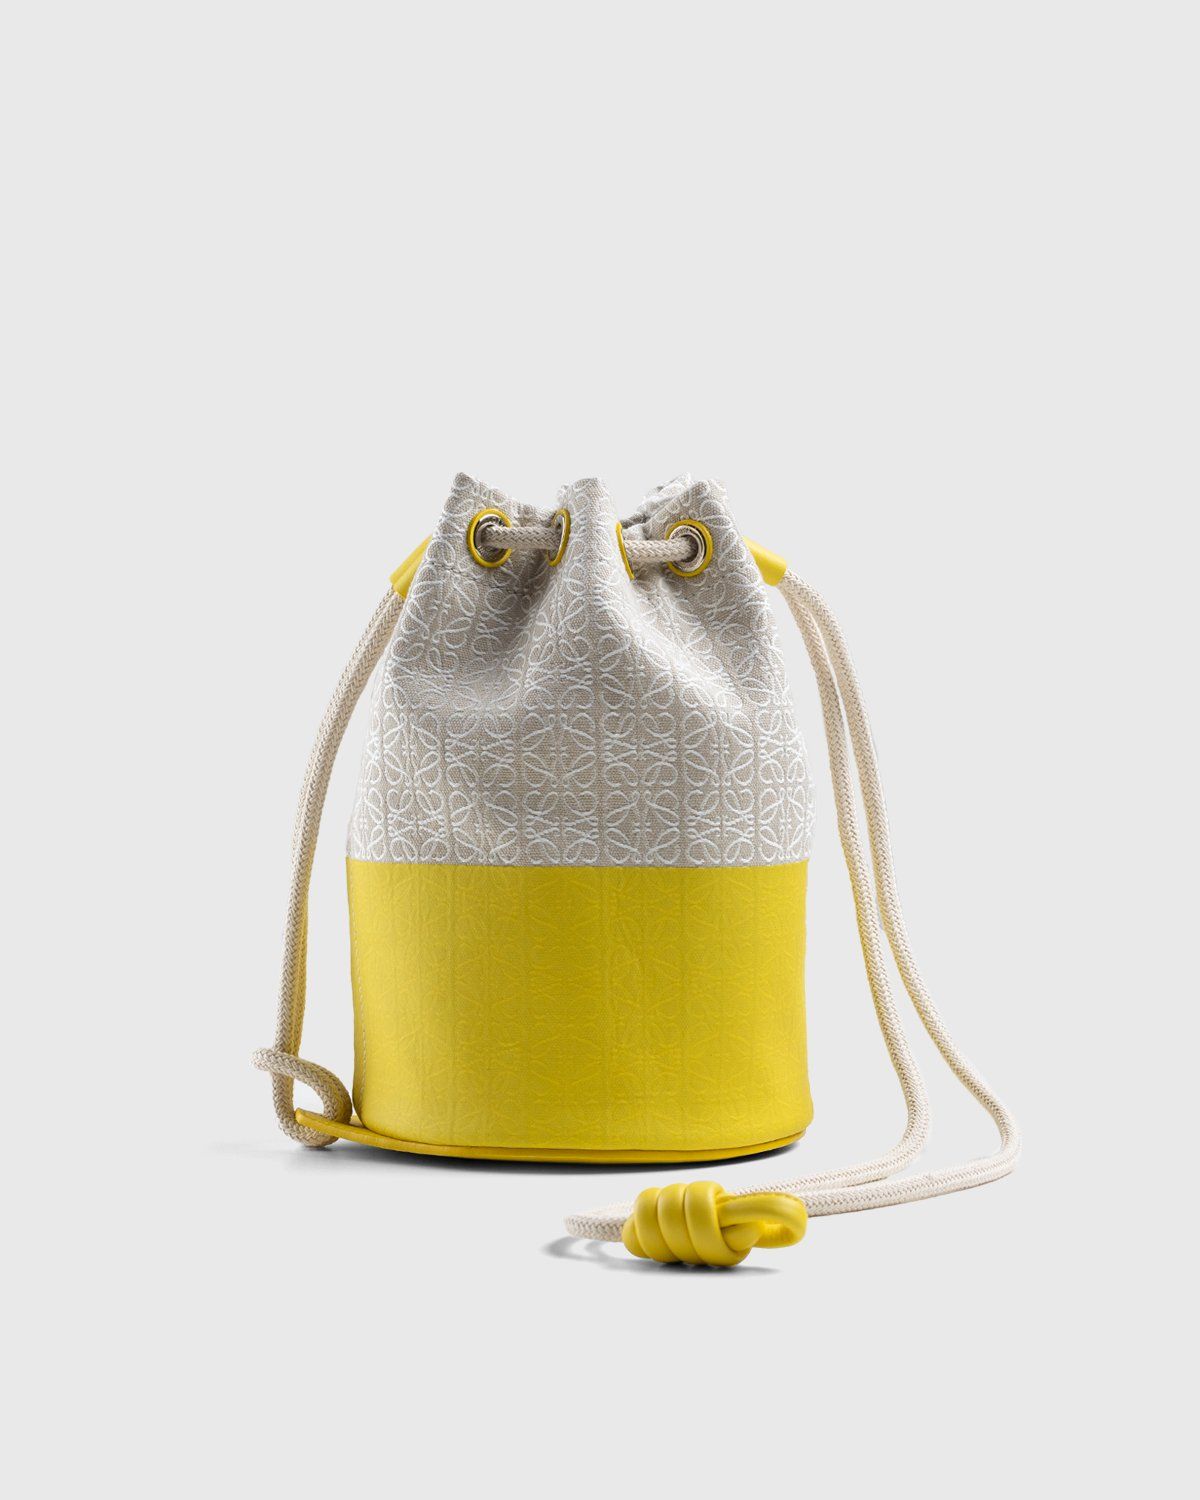 Loewe Paula's IBIZA- Sailor Canvas Bucket Bag- Woman- Uni - Yellow